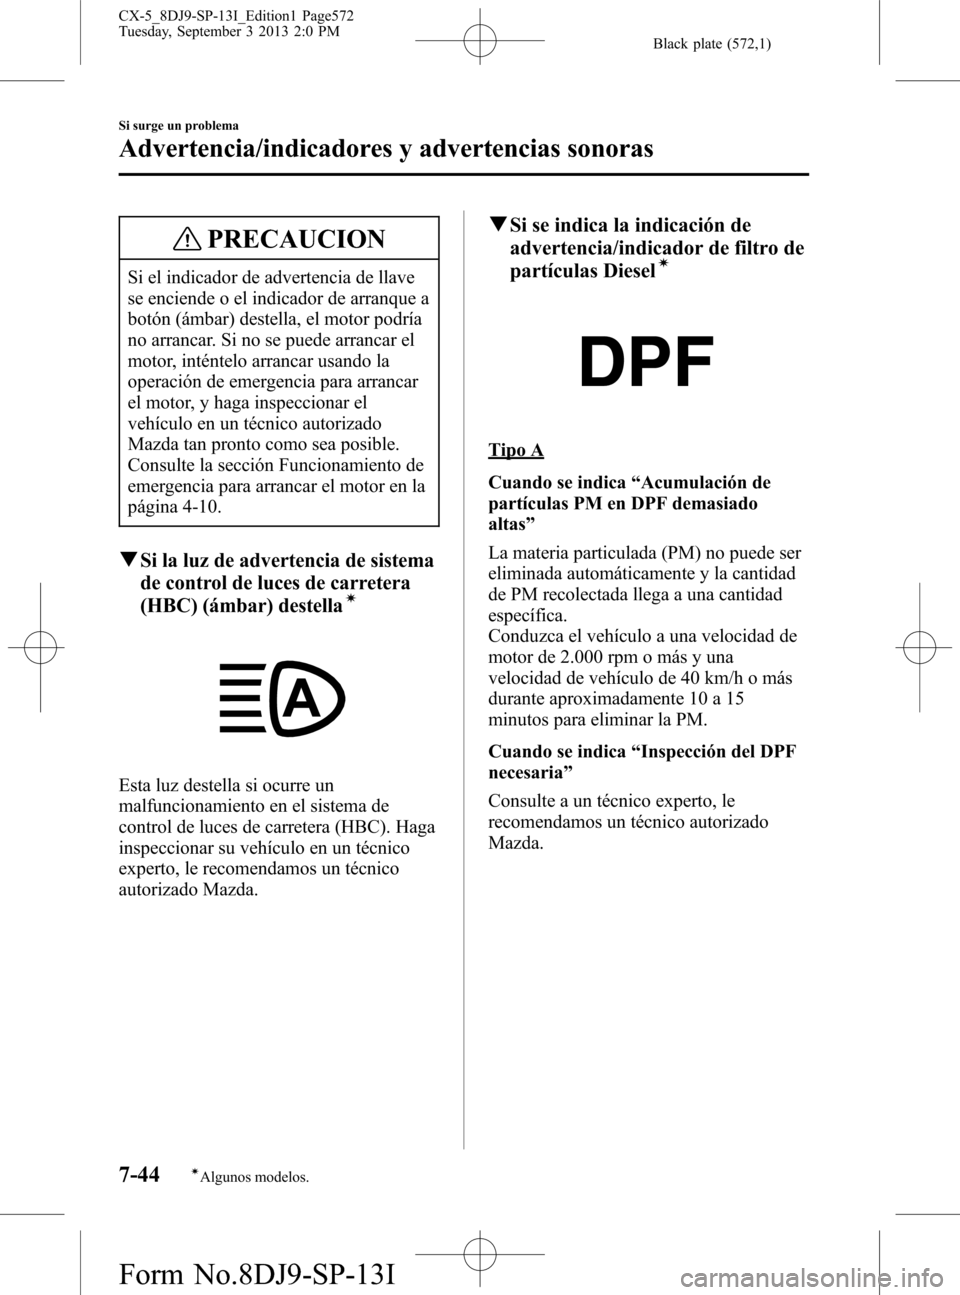 MAZDA MODEL CX-5 2014  Manual del propietario (in Spanish) Black plate (572,1)
PRECAUCION
Si el indicador de advertencia de llave
se enciende o el indicador de arranque a
botón (ámbar) destella, el motor podría
no arrancar. Si no se puede arrancar el
motor